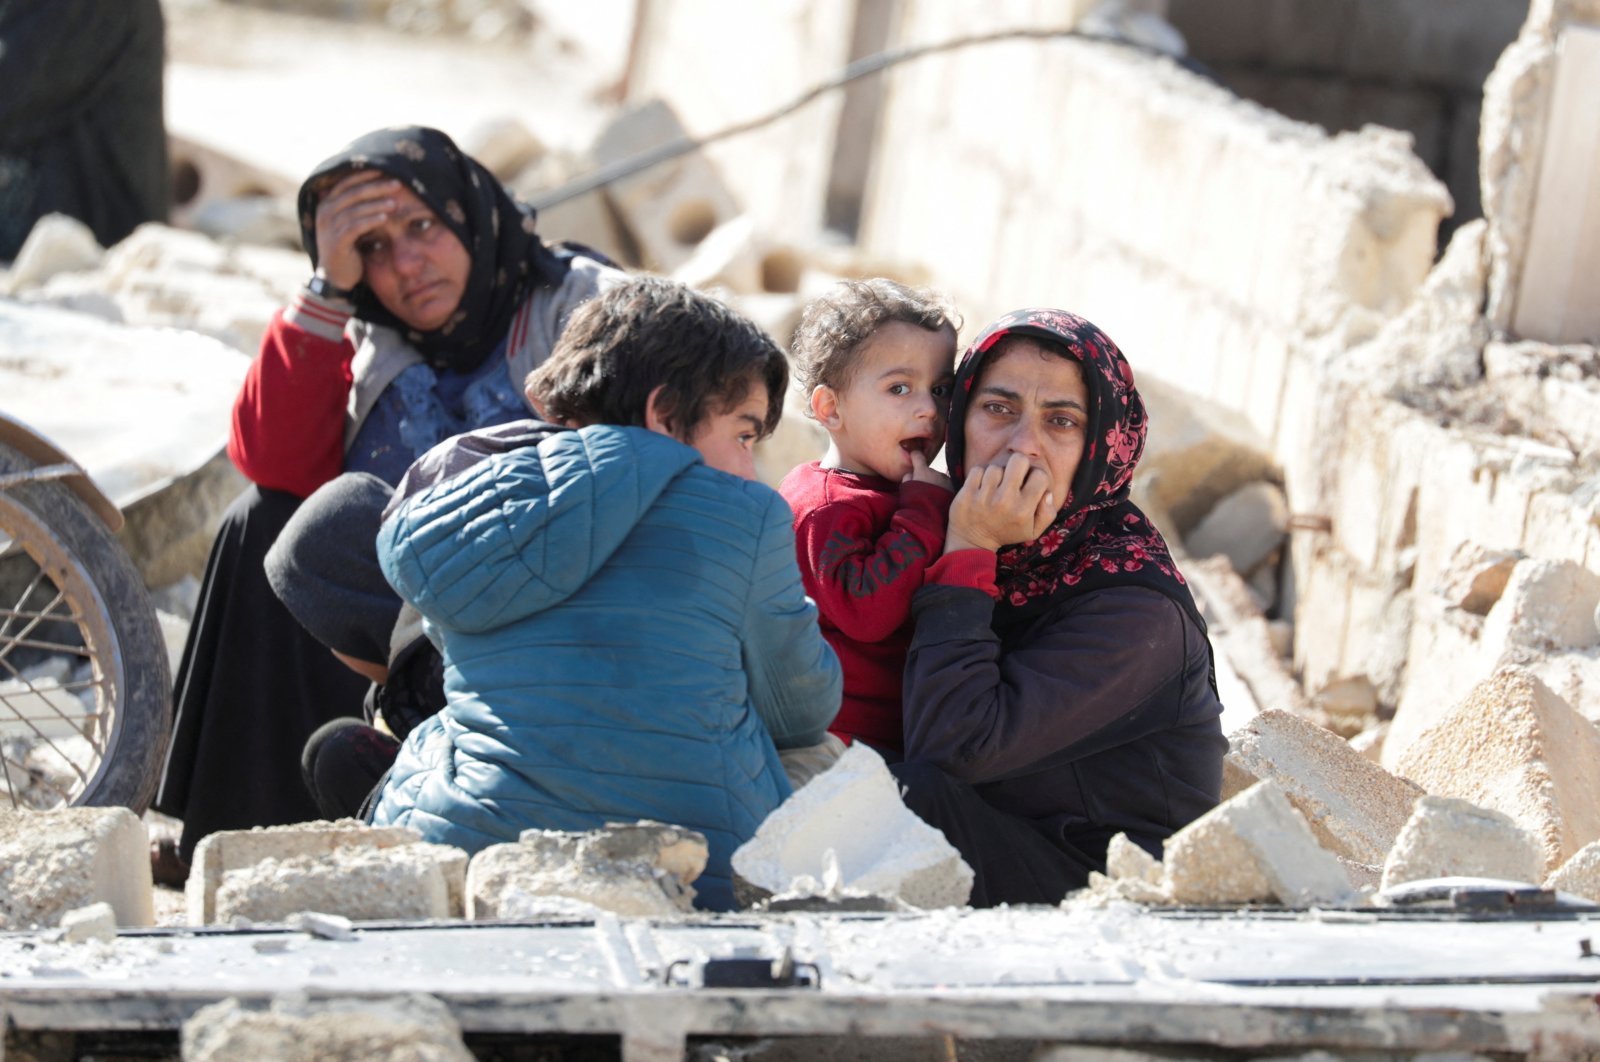 Gempa bumi baru-baru ini di Türkiye, Suriah dapat mempengaruhi hingga 23 juta, kata WHO